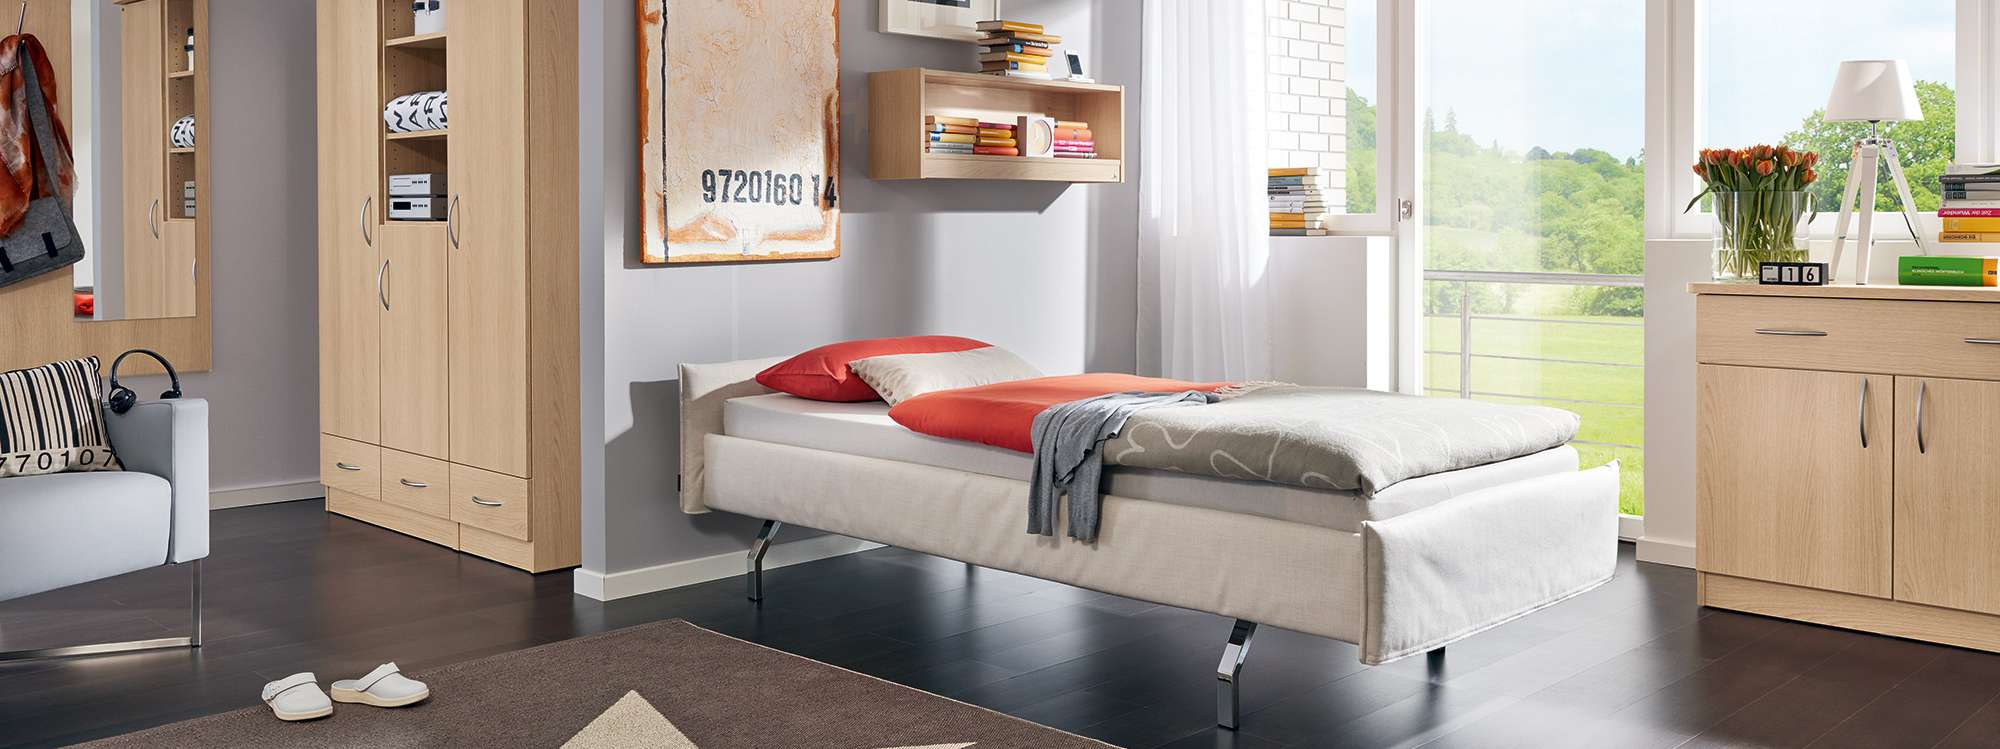 Adrano furniture in a dormitory room